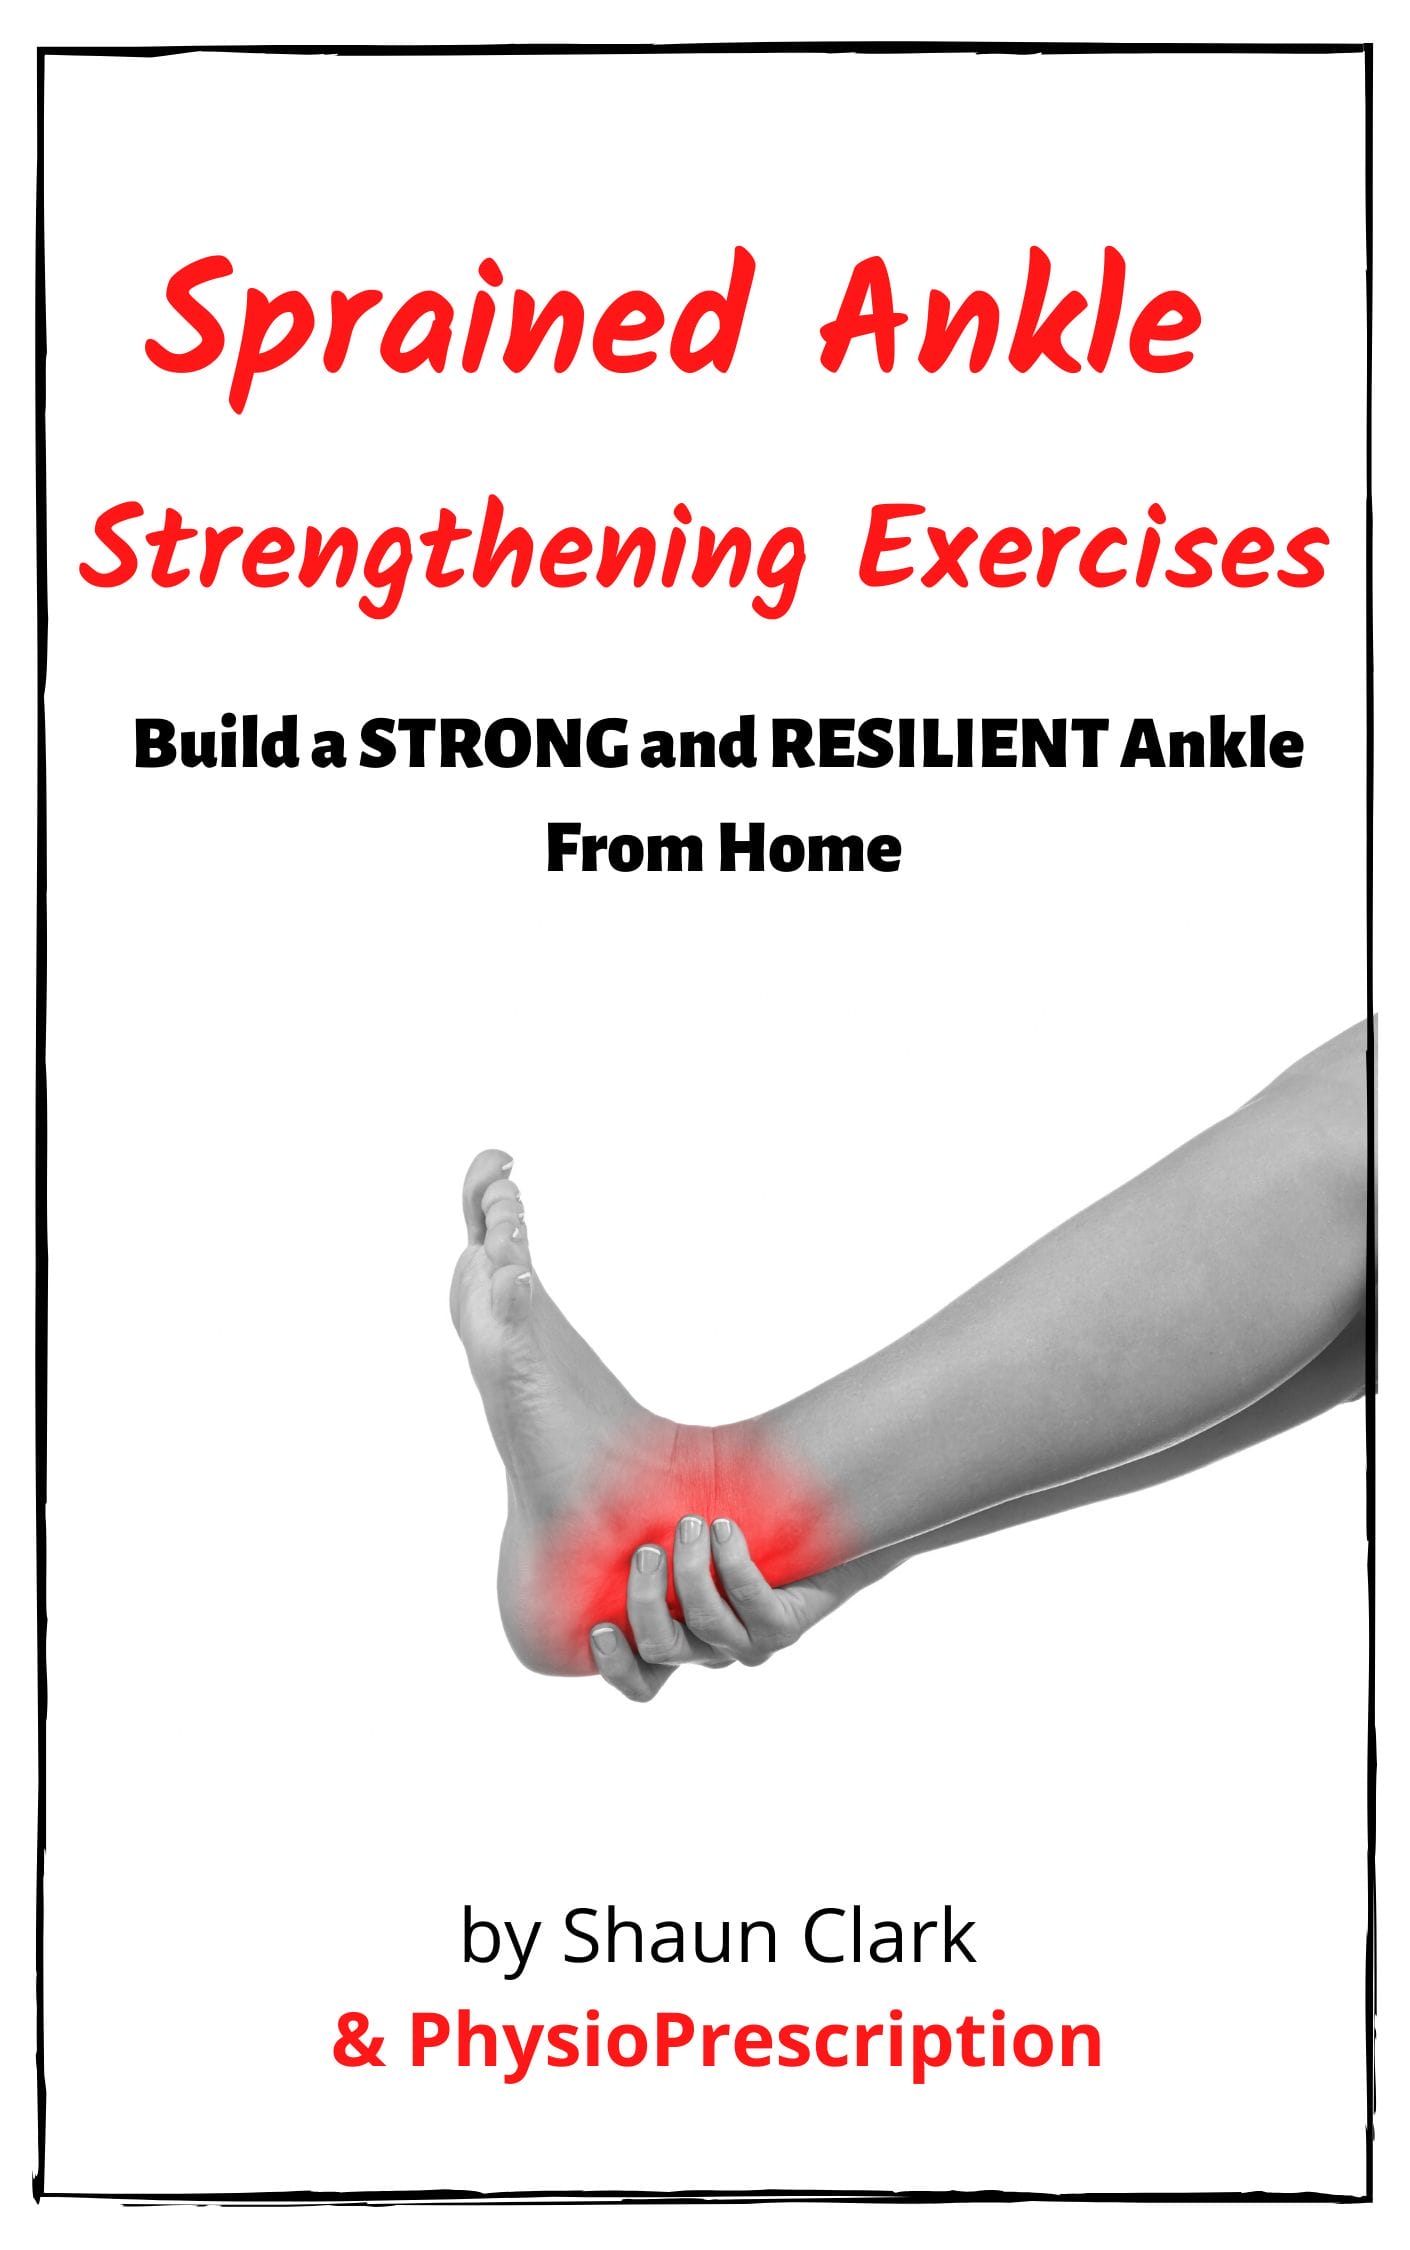 https://ecfe2ry65v9.exactdn.com/wp-content/uploads/edd/2020/04/Sprained-Ankle-Strengthening-Exercises-1.png